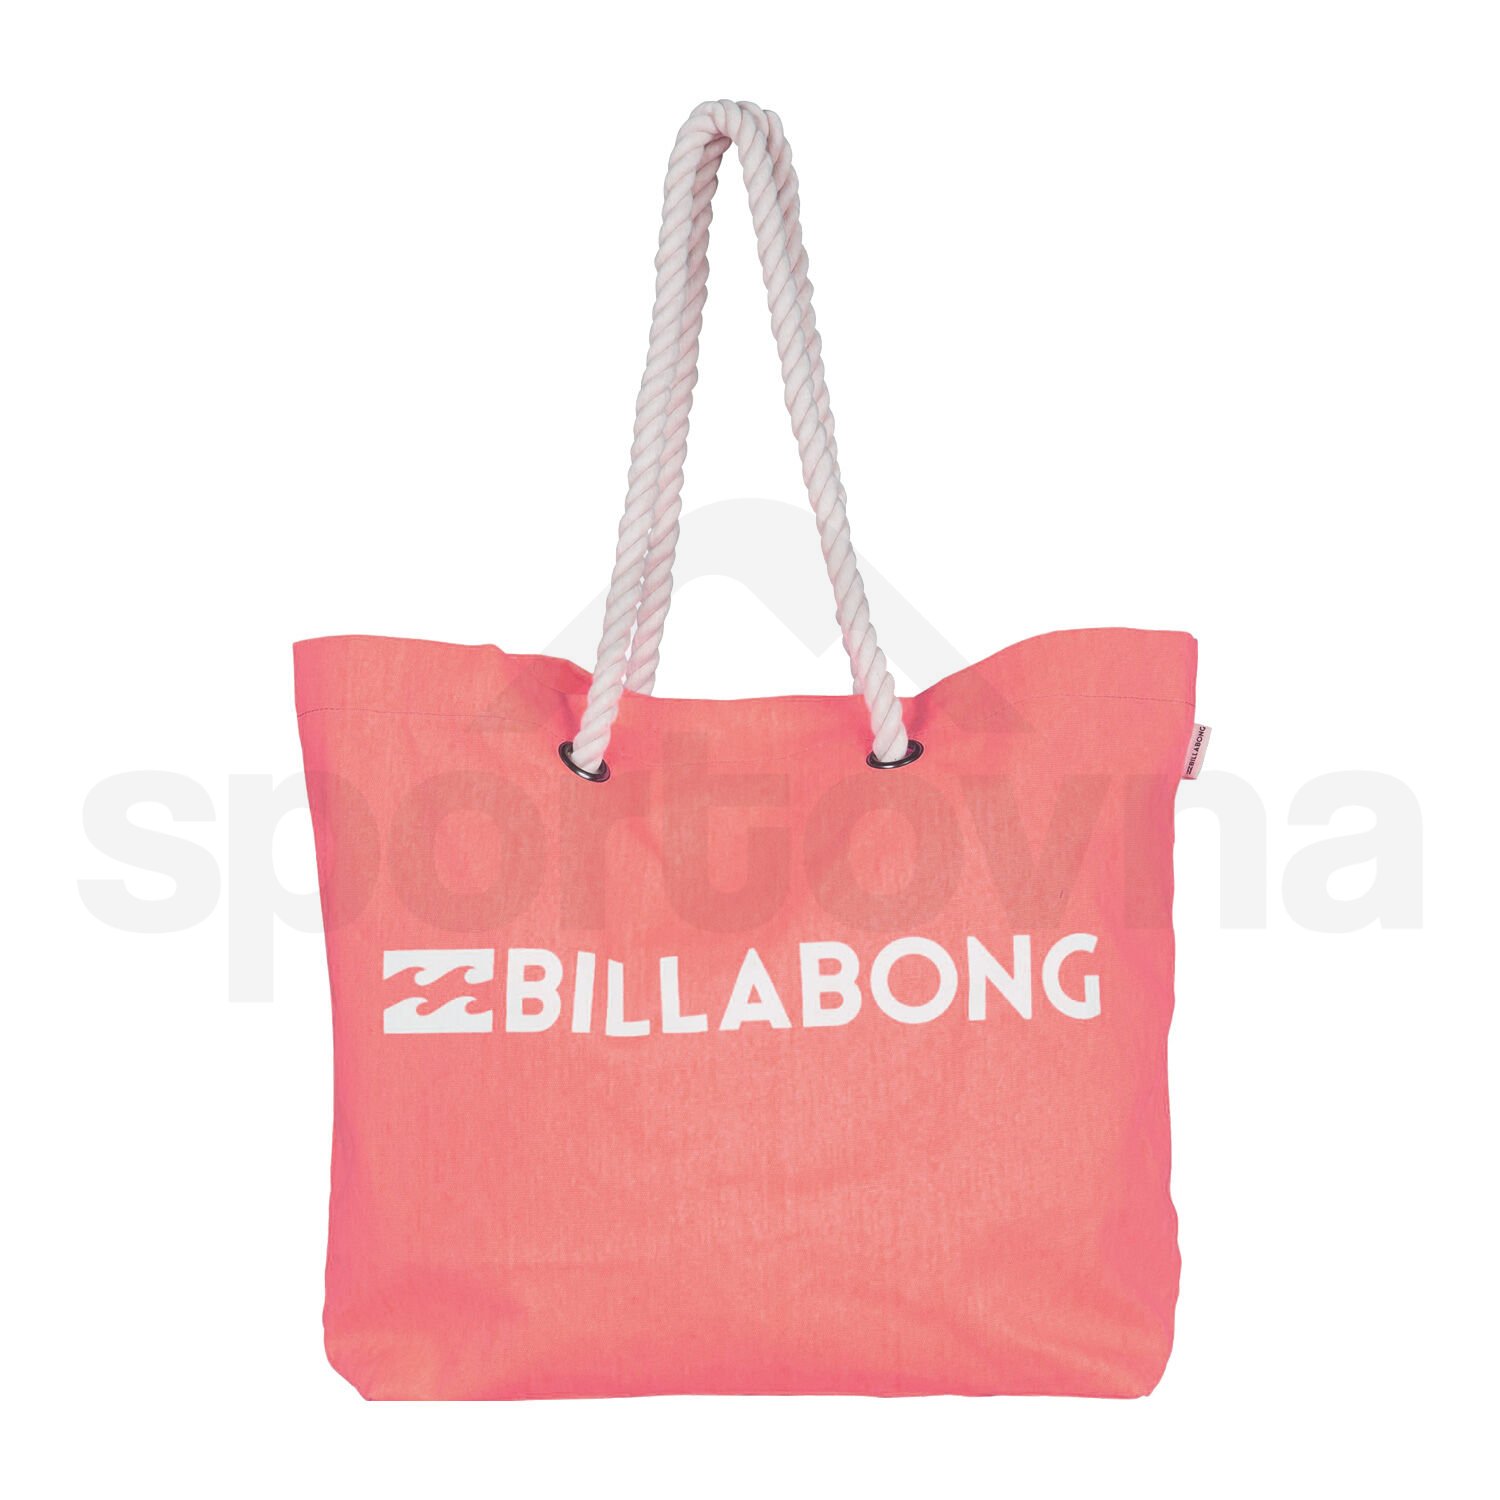 Taška Billabong Essential Bag - růžová